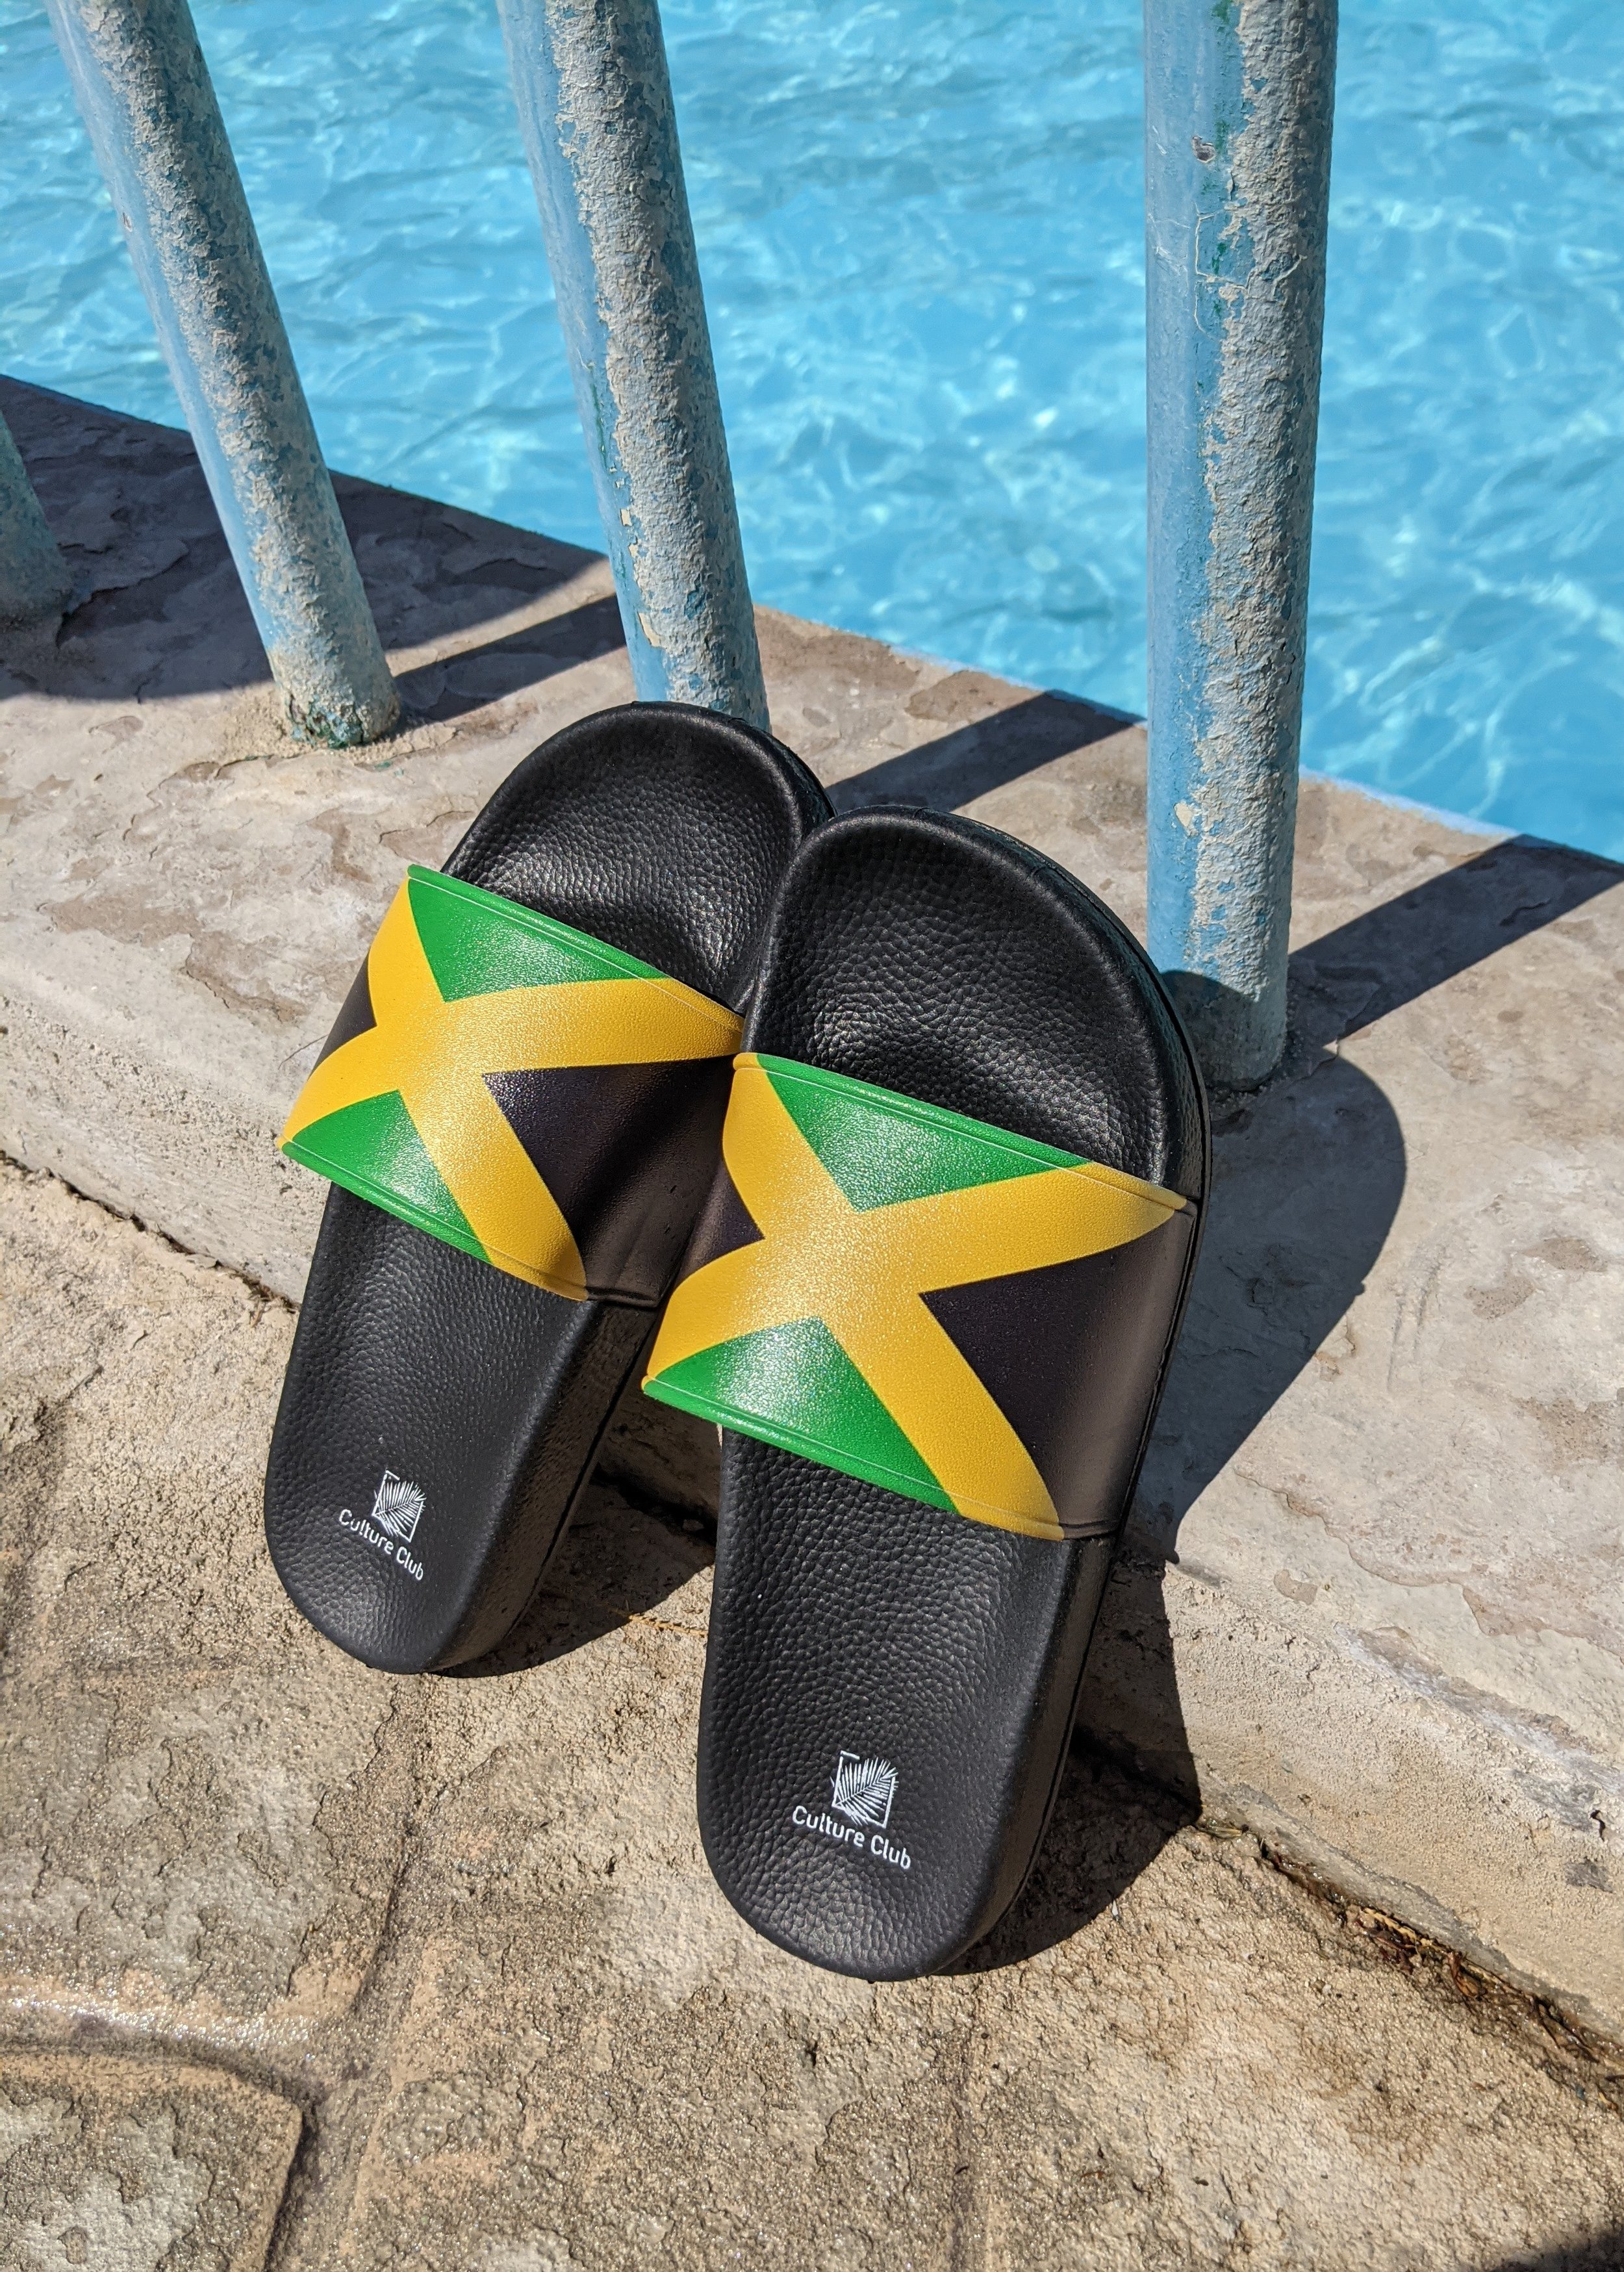 Jamaica sliders by pool1.jpg